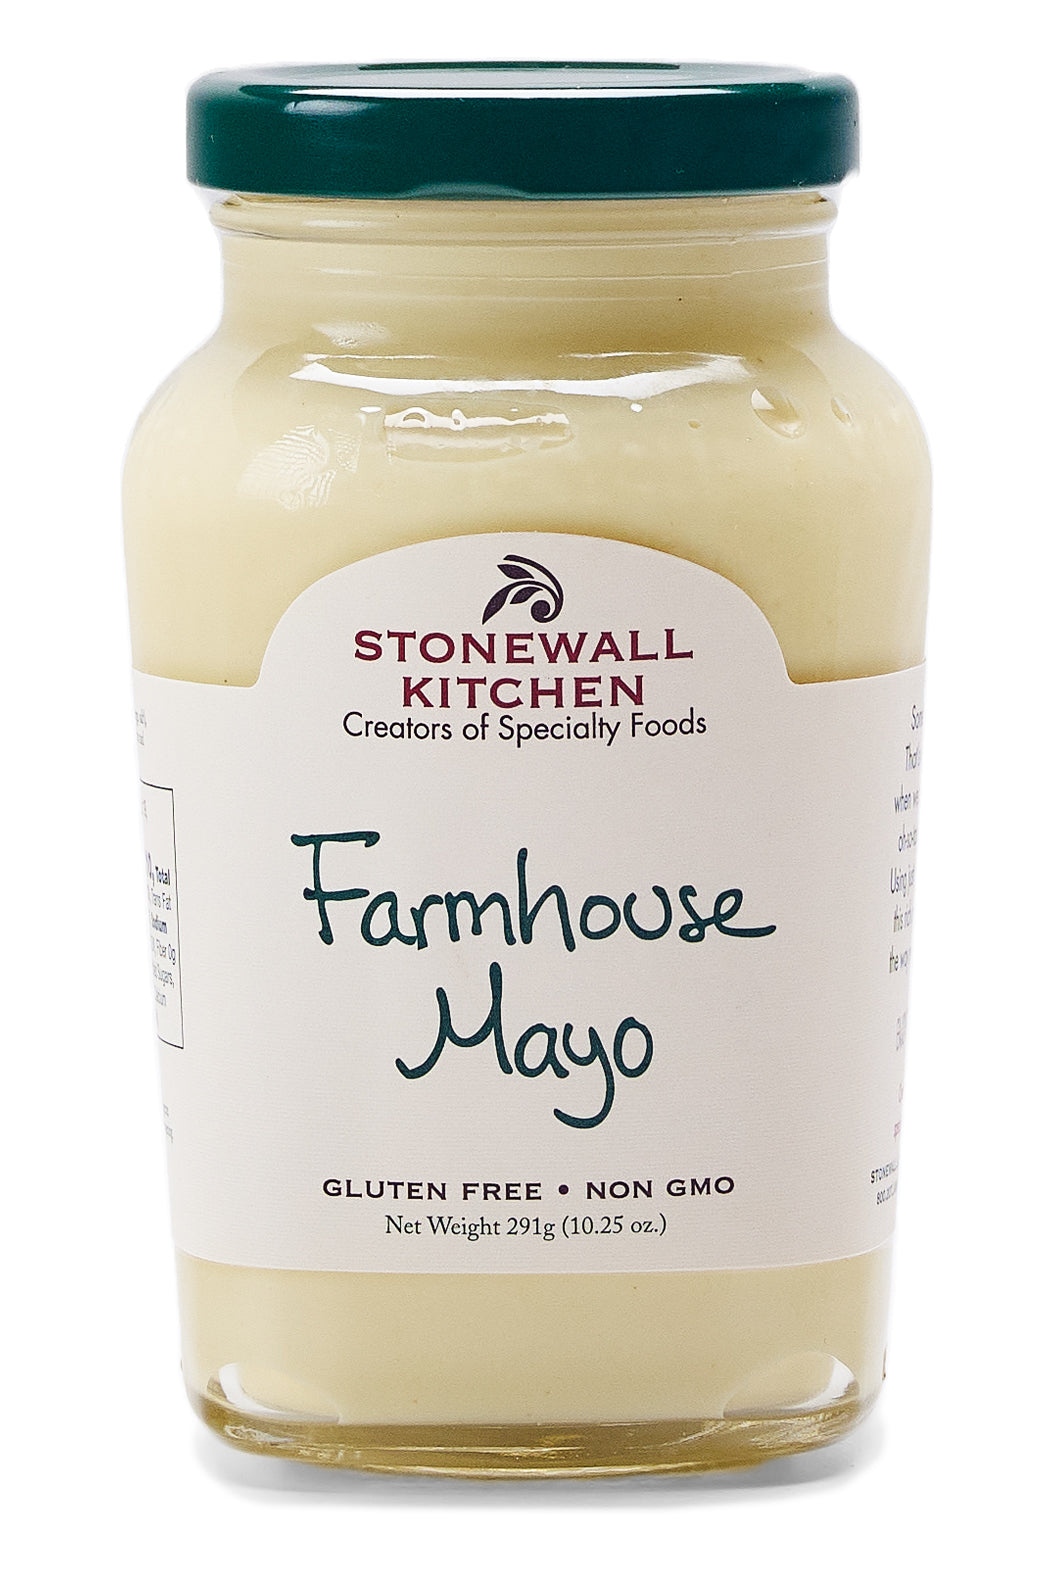 Stonewall Kitchen Farmhouse Mayo - Olive Oil Etcetera 